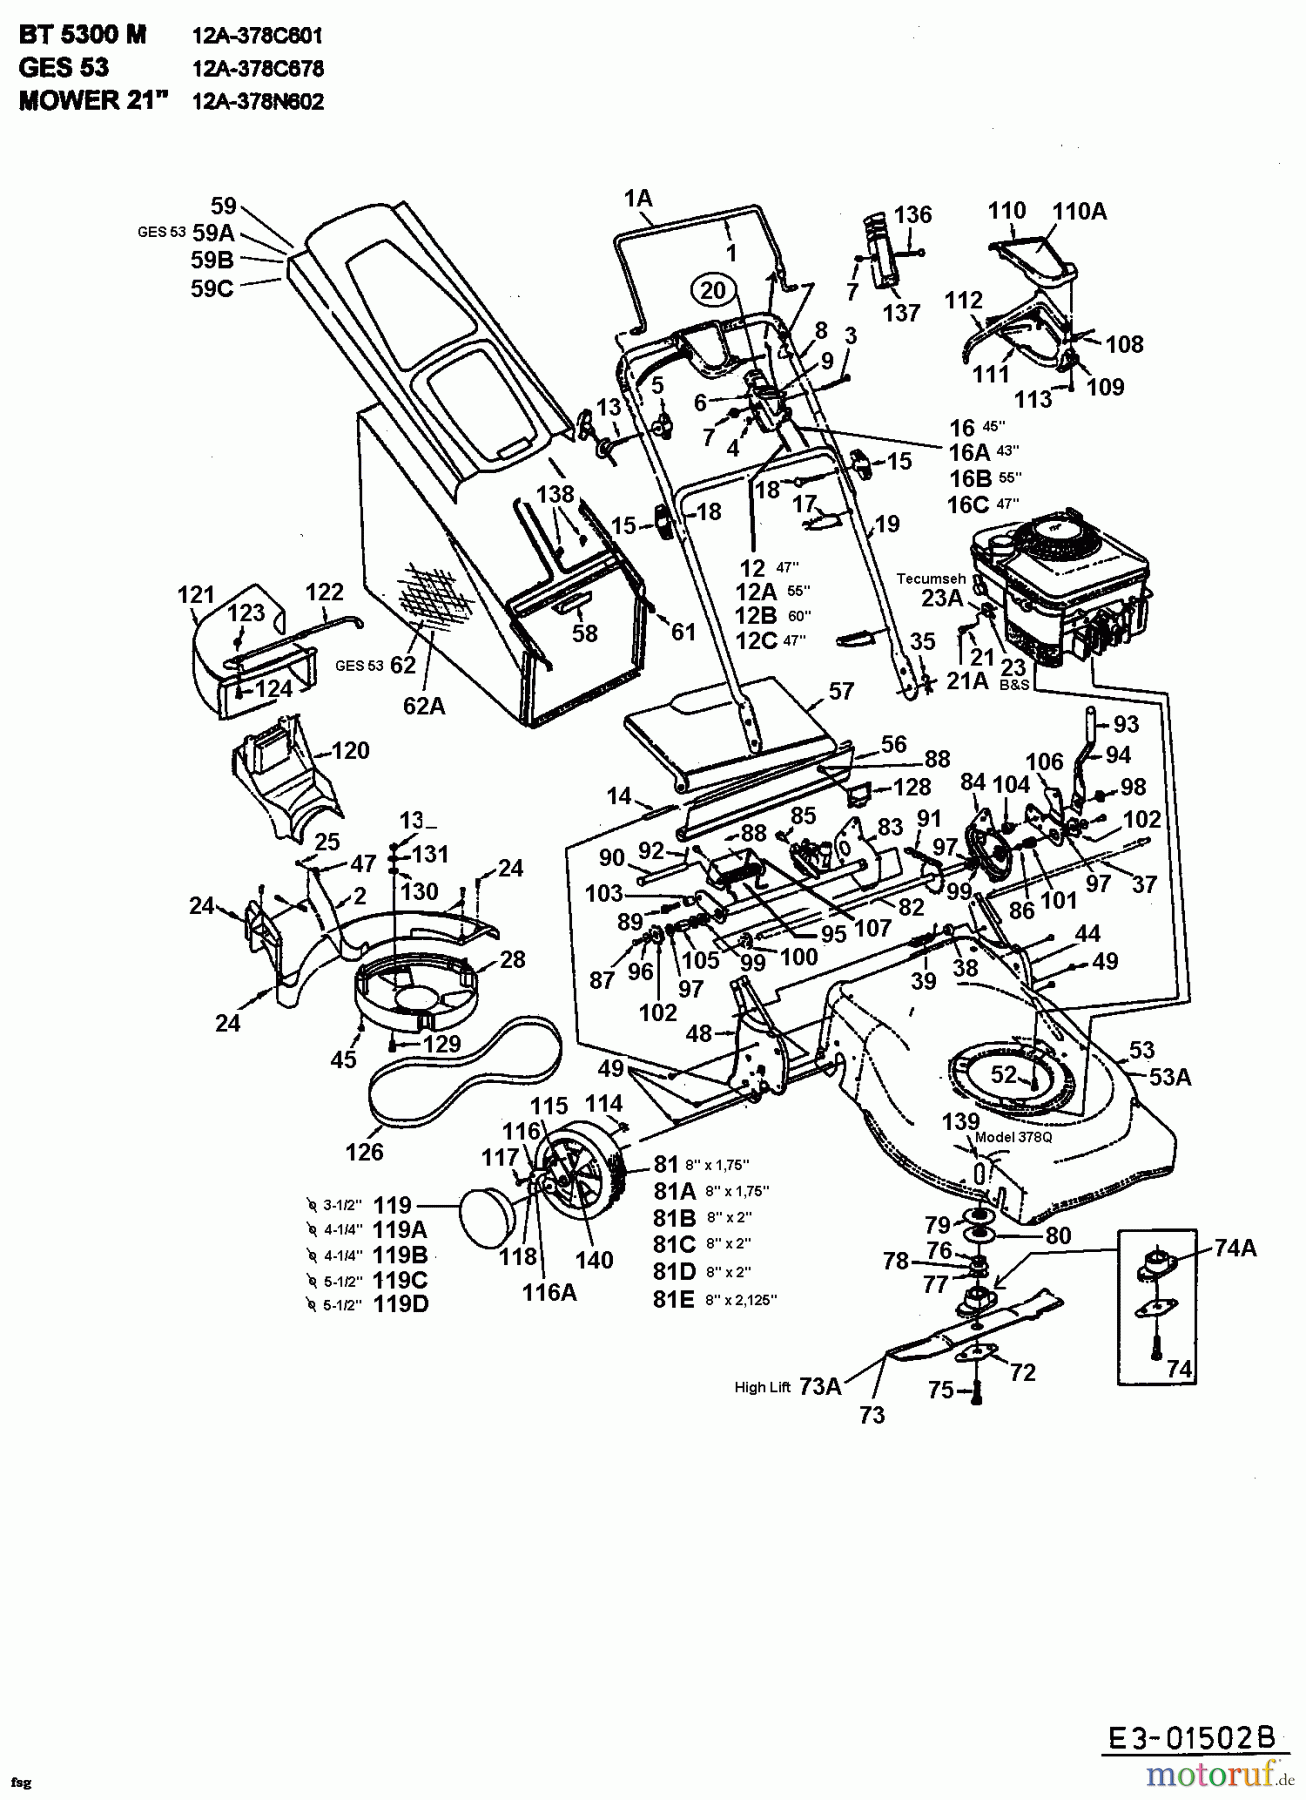  MTD Motormäher mit Antrieb GES 53 12A-378C678  (1998) Grundgerät